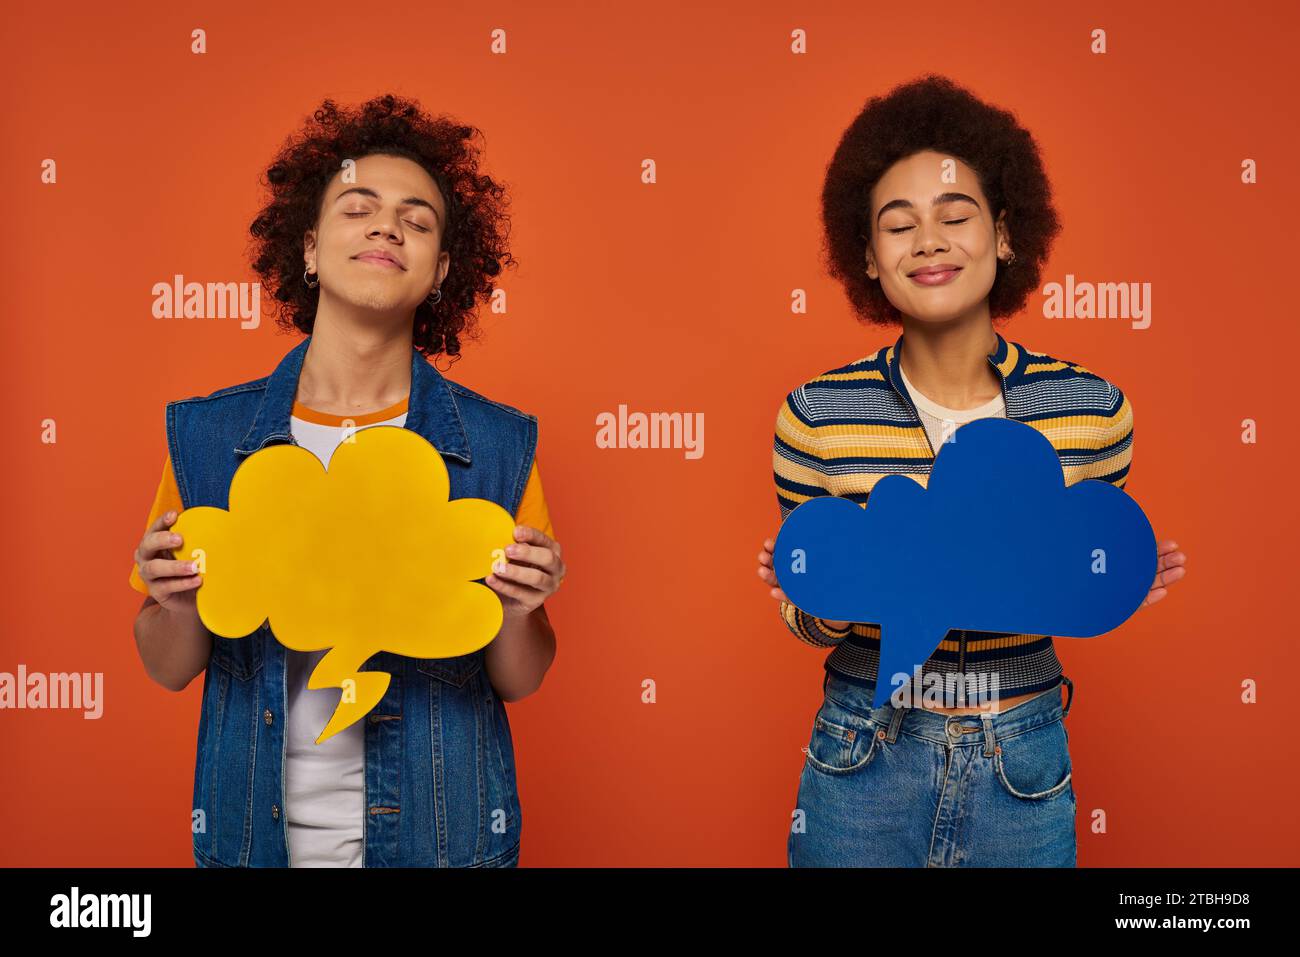 fratello e sorella afro-americani dall'aspetto gradevole che si mettono in posa con bolle di pensiero sullo sfondo arancione Foto Stock